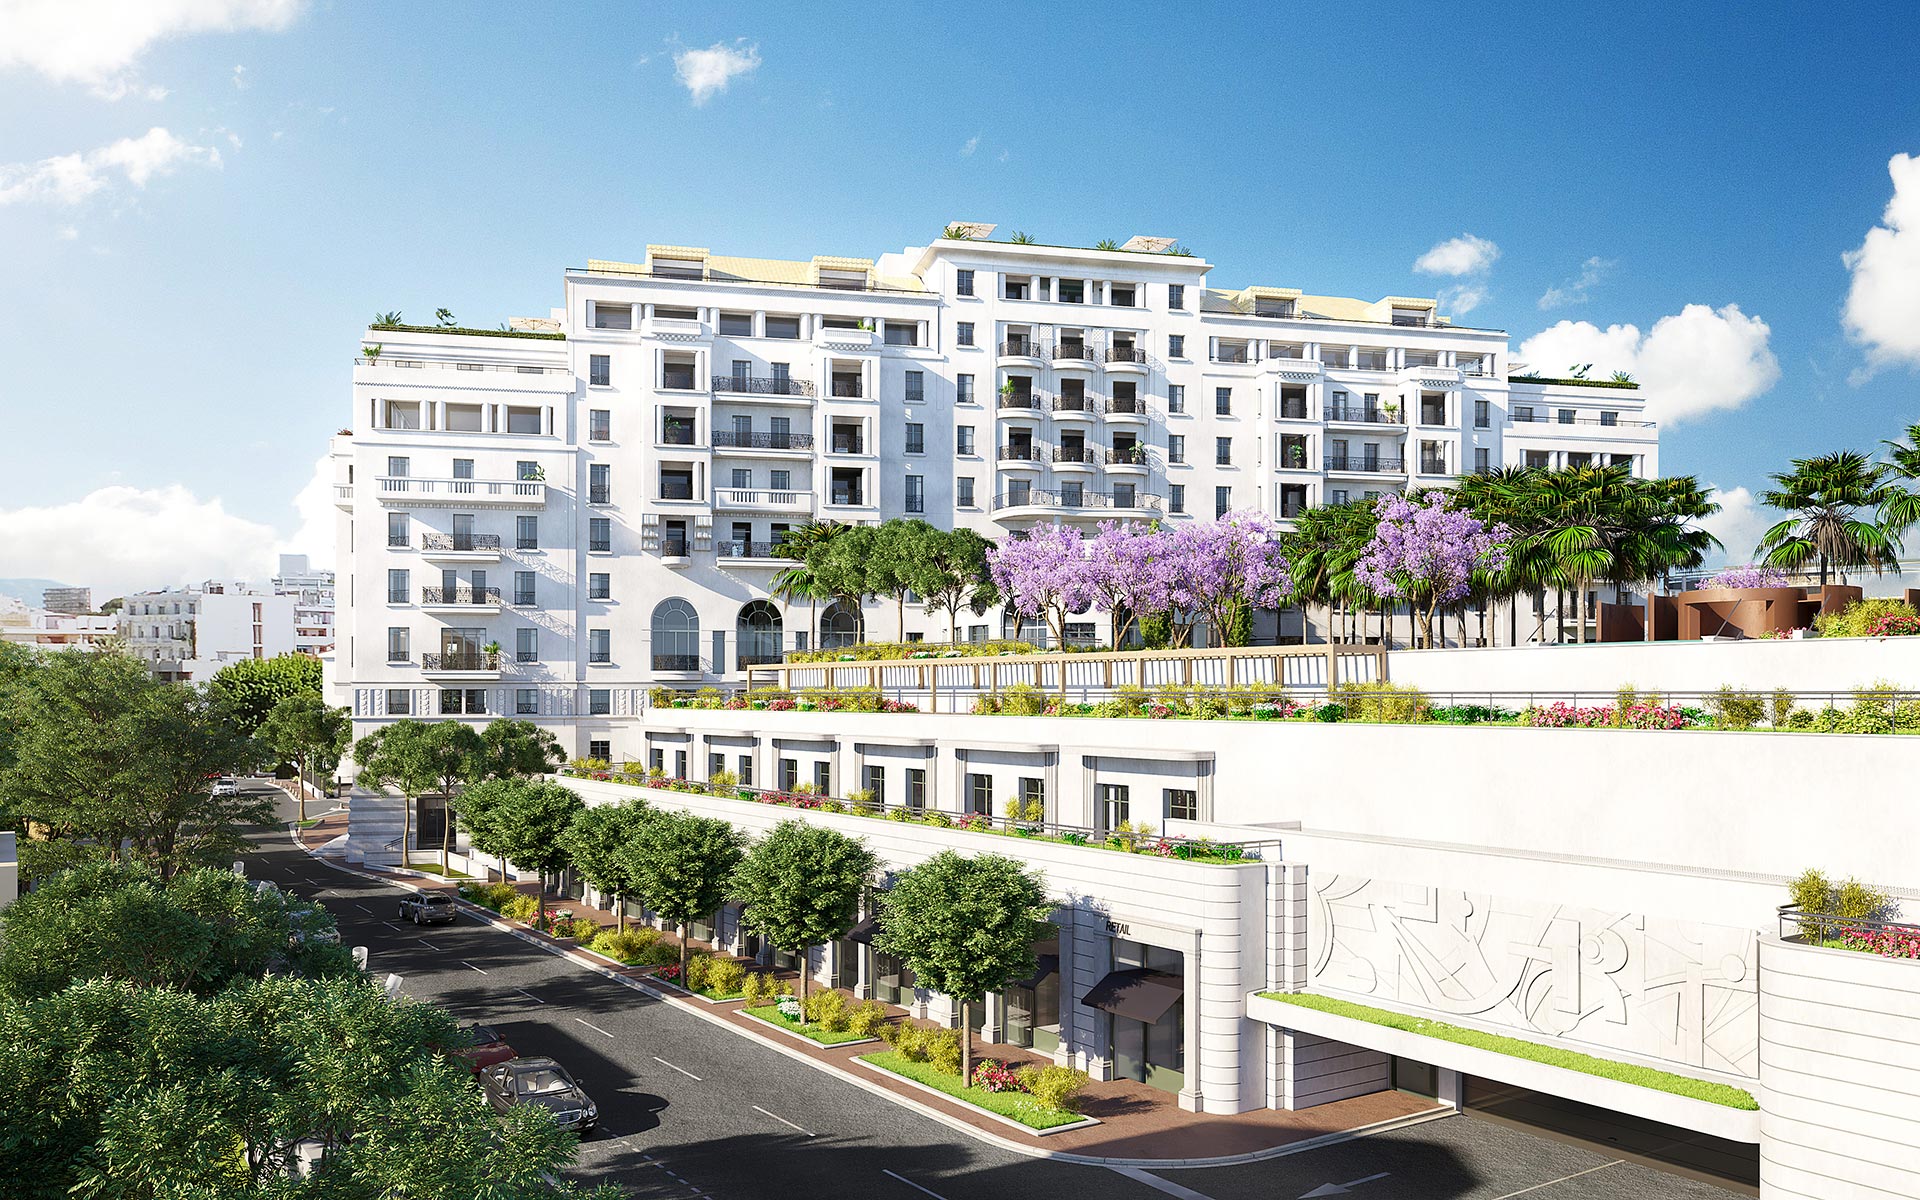  Plan d'ensemble d'hôtel à Cannes en 3D - Studio de graphistes 3D